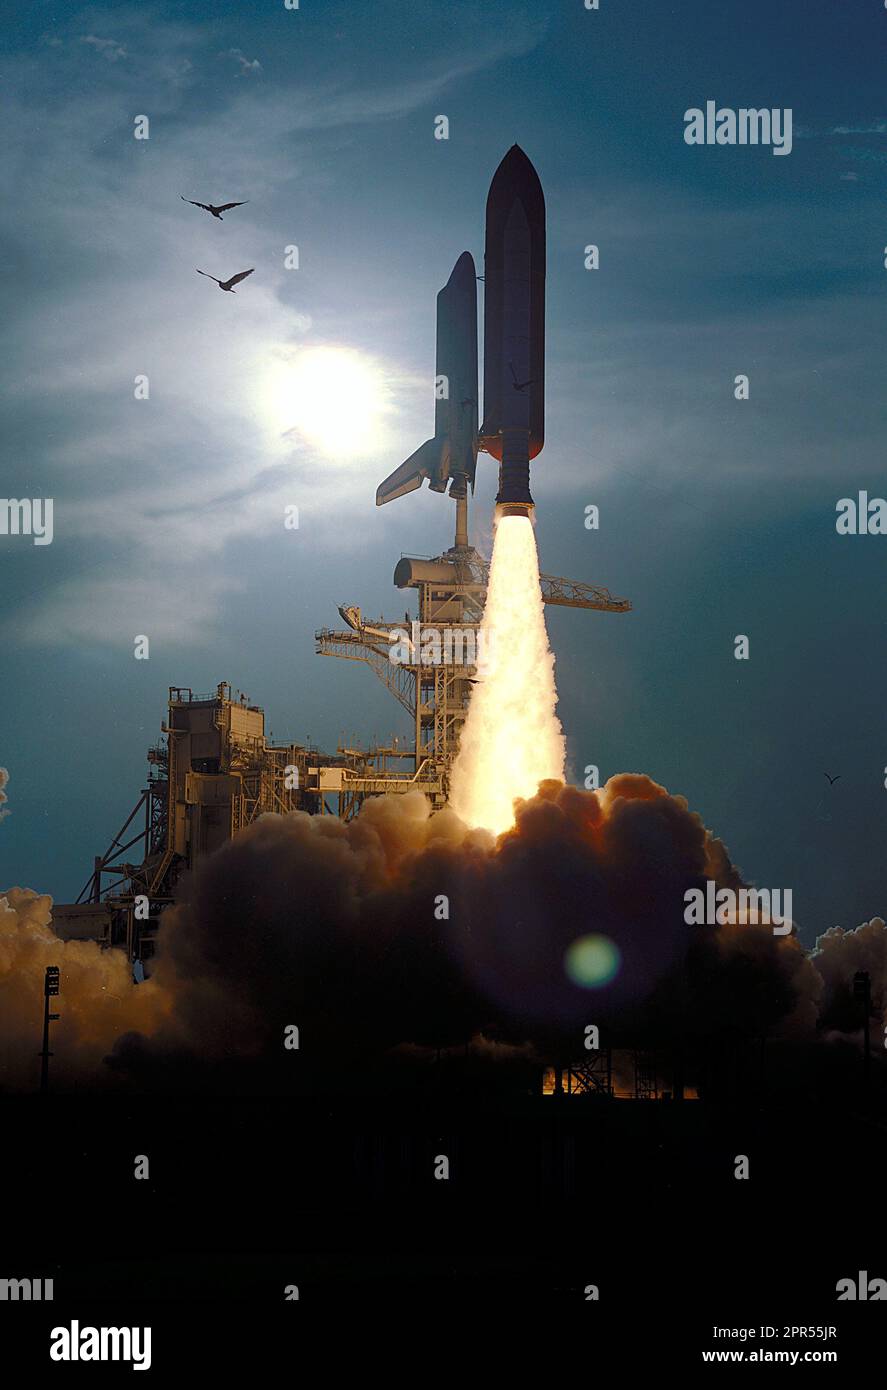 Der Space Shuttle Discovery steigt ab Launch Pad 39B auf Mission STS-64 um 18:22:35 Uhr EDT, 9. September 1994, in die Höhe. An Bord sind sechs Personen: Commander Richard N. Richards; Pilot L. Blaine Hammond Jr.; und die Missionsspezialisten Mark C. Lee, Carl J. Meade, Susan J. Helms und Dr. J.M. Linenger. Zu den Nutzlasten für den Flug gehören das Lidar InSpace Technology Experiment (LITE), das Shuttle Spicoted Autonomous Research Tool for Astronomy 201 (SPARTAN201) und das Robot Operated Processing System (ROMPS). Auch die Missionsspezialisten Lee und Meade sollen eine extravehikuläre Aktivität Durin durchführen Stockfoto